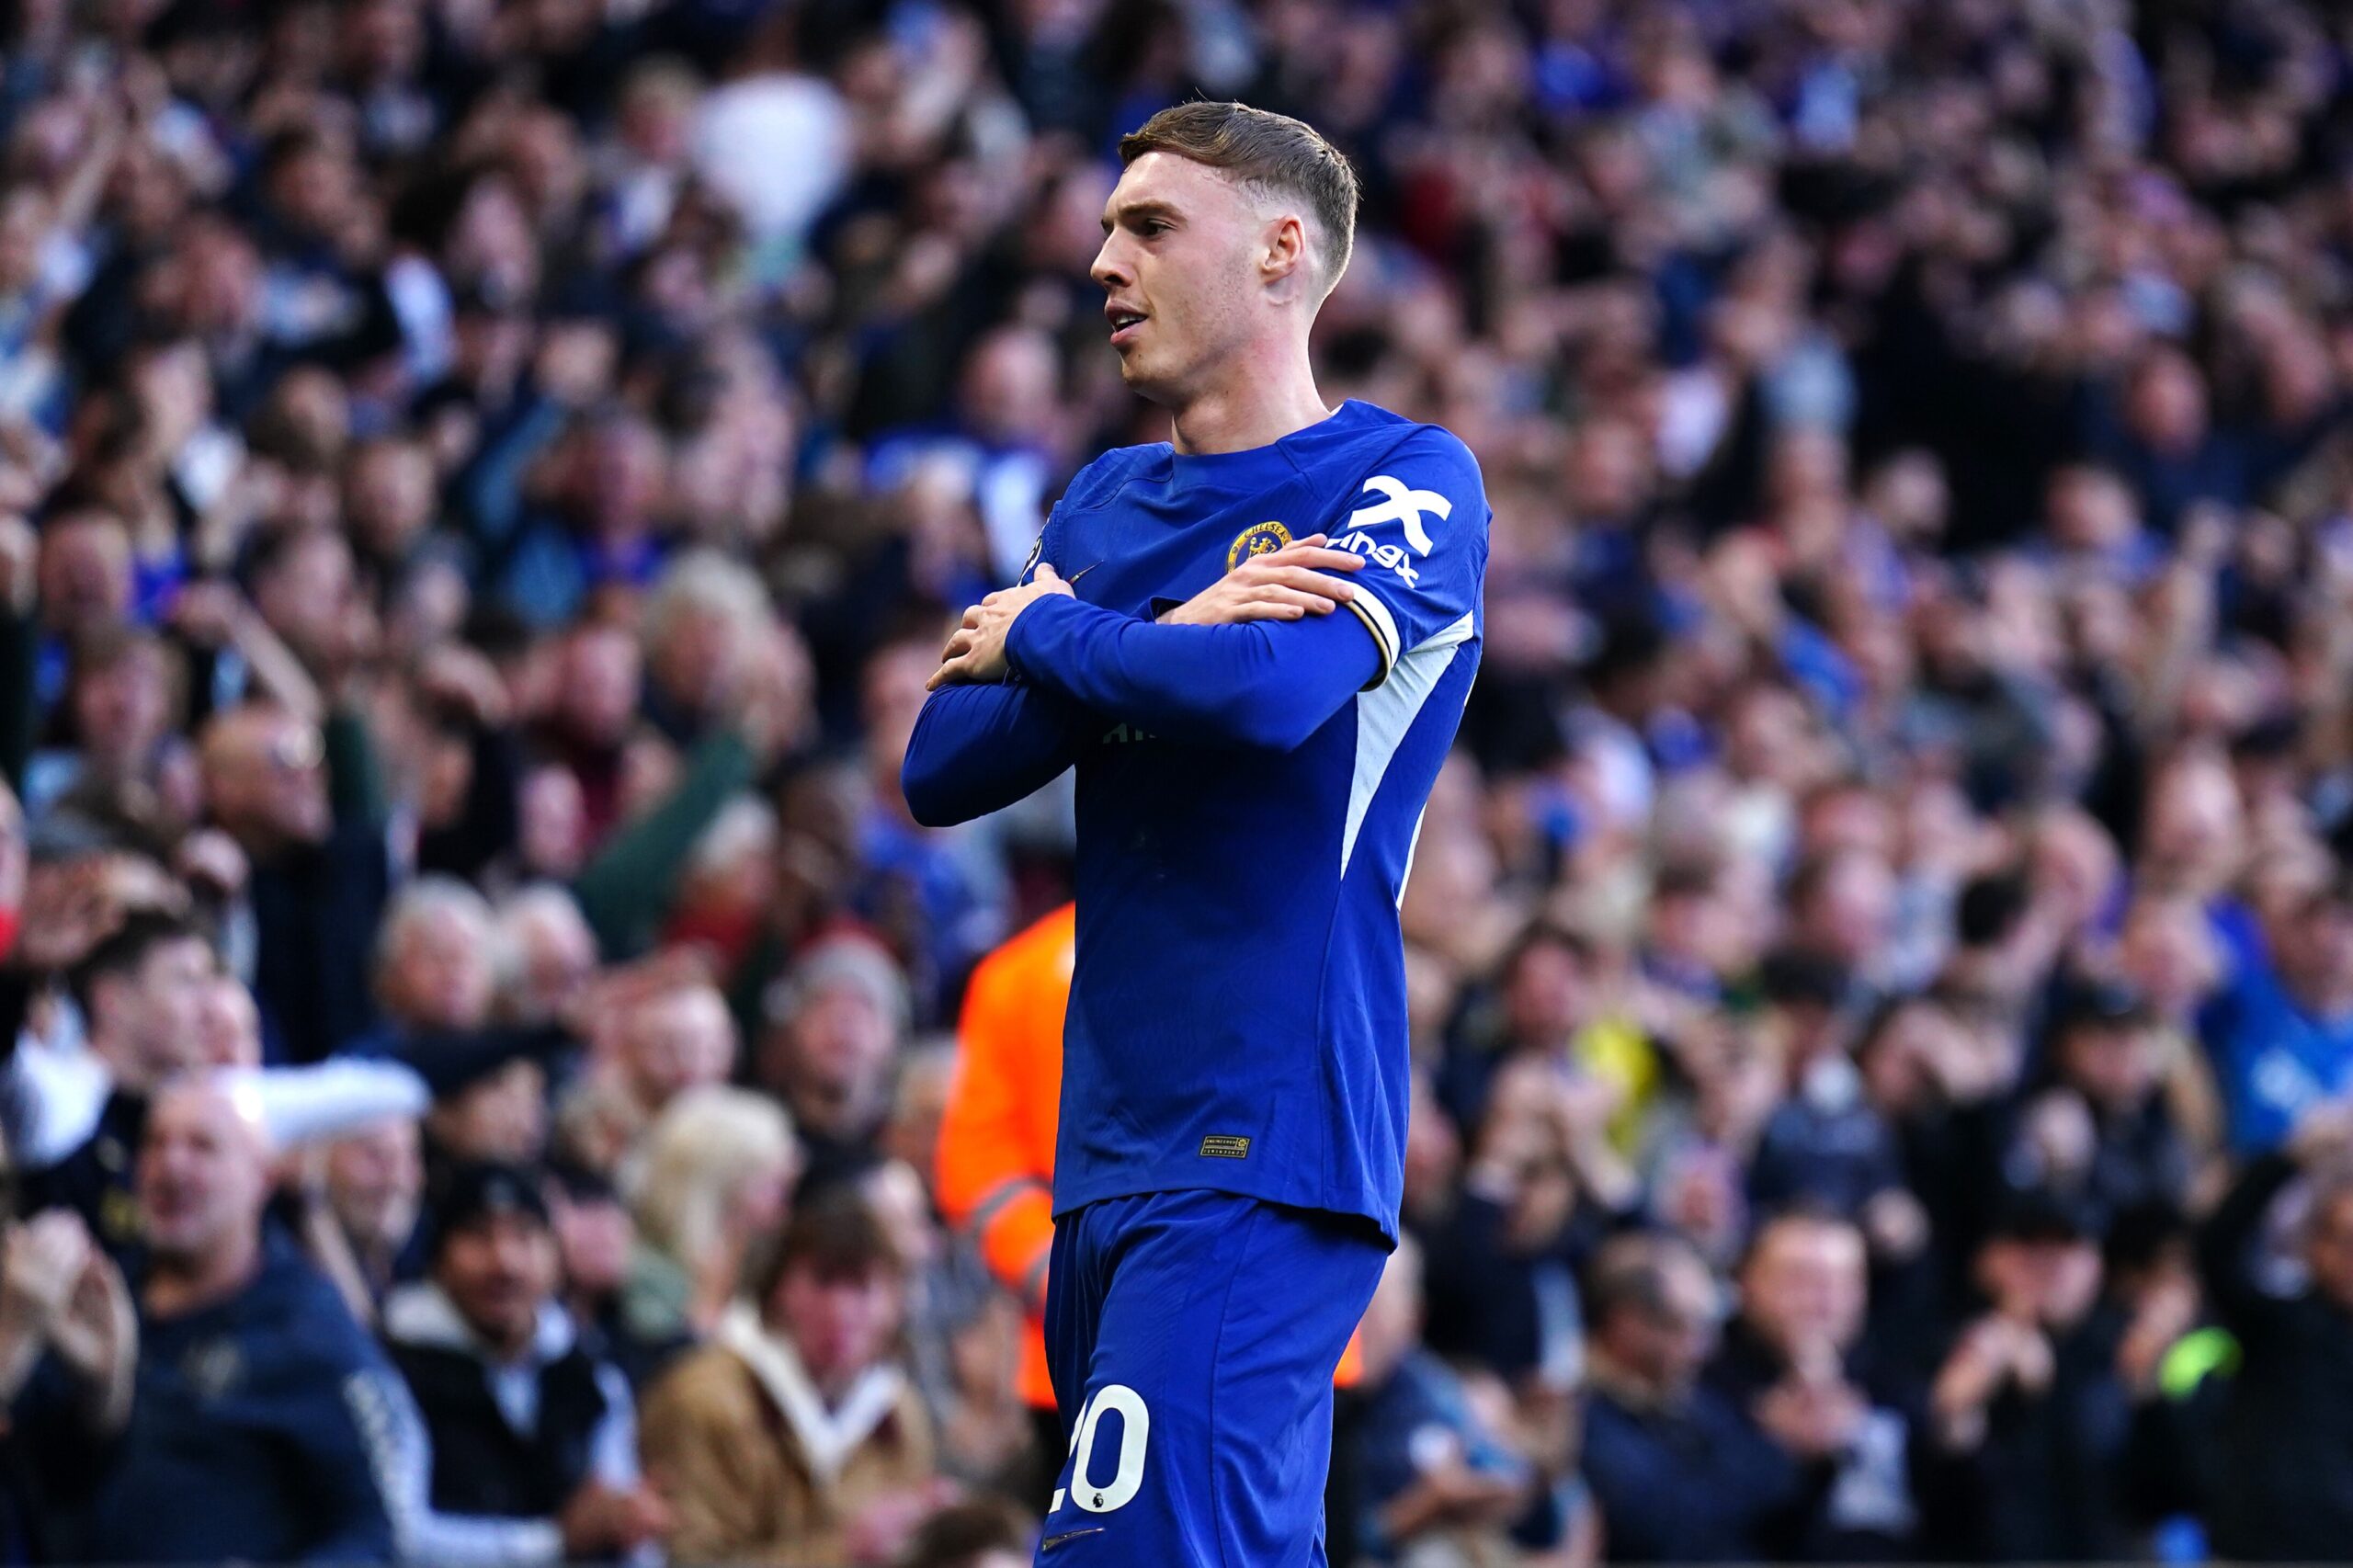 Le triplé sensationnel de Cole Palmer (Chelsea) contre Everton (VIDEO)